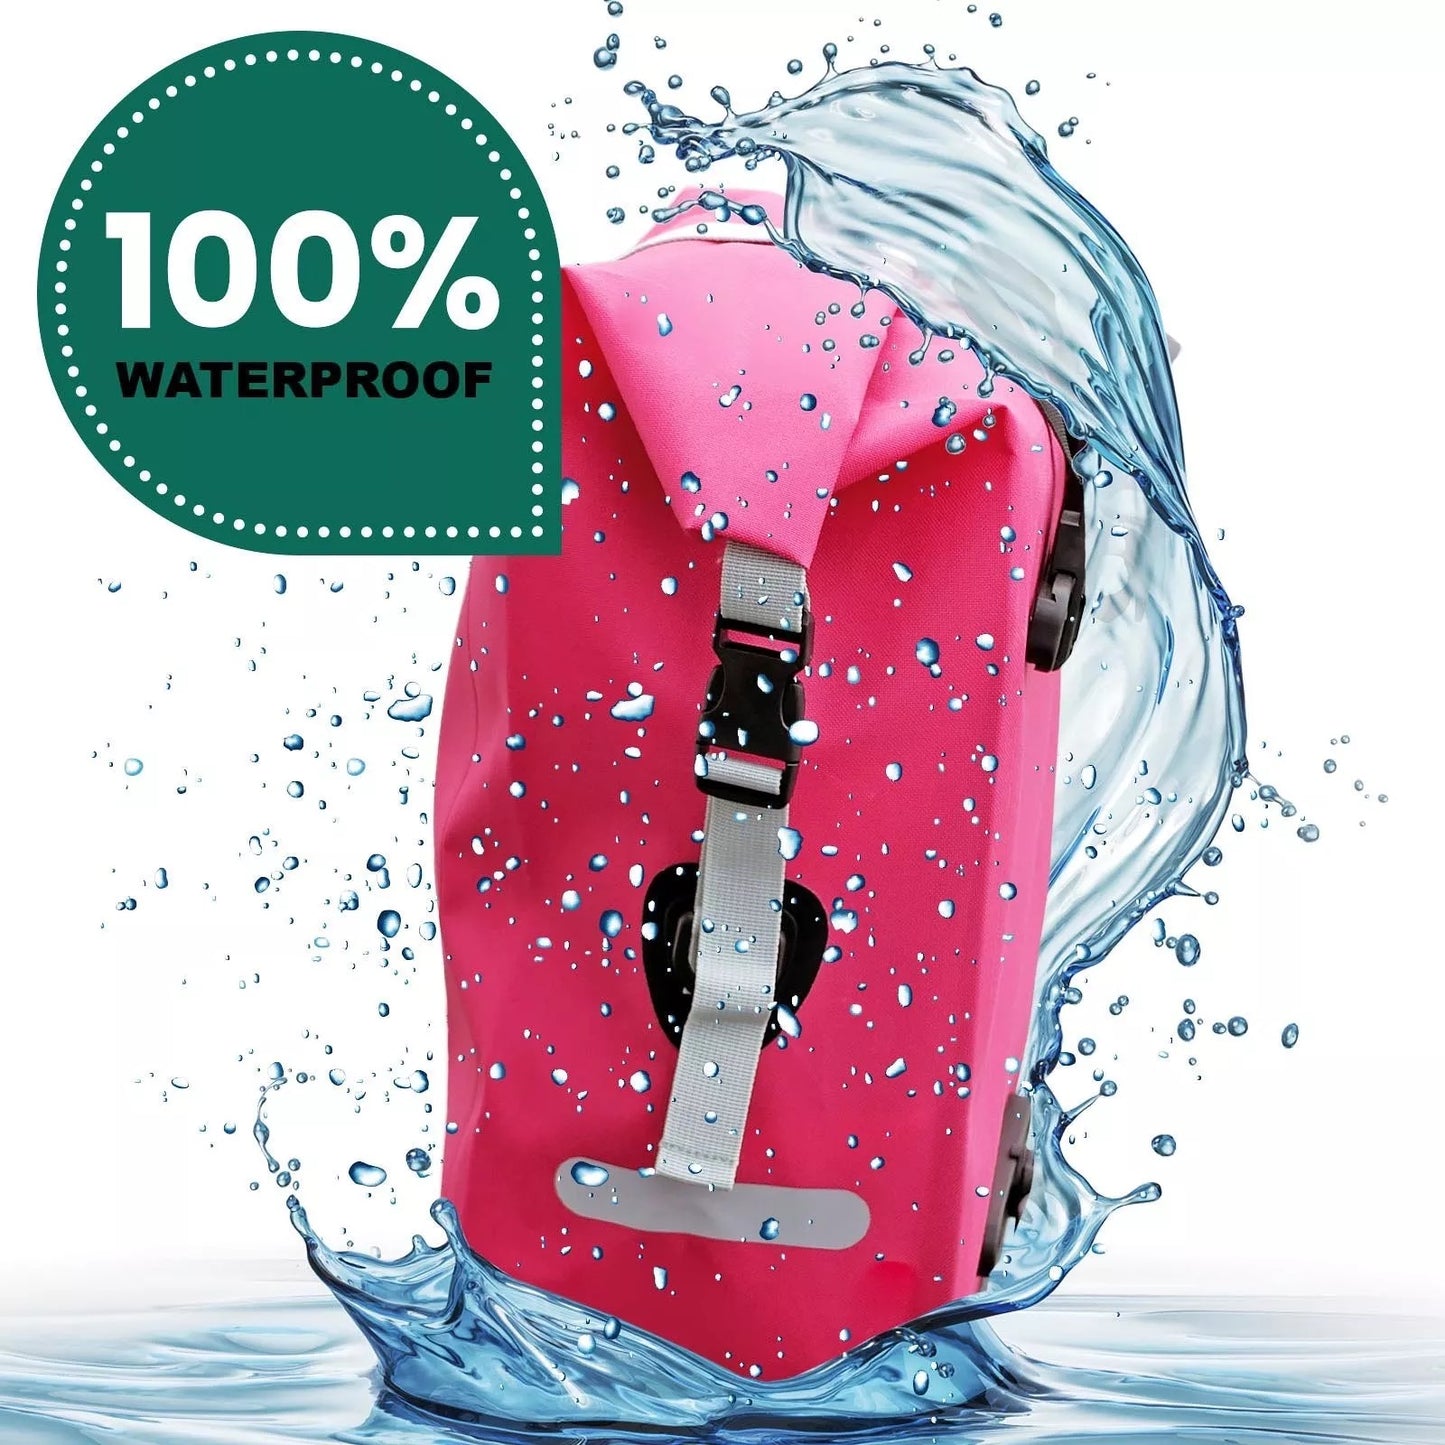 Fahrradtasche für Gepäckträger, 100% wasserdicht, pink, "Wegbereiter" von Bomence